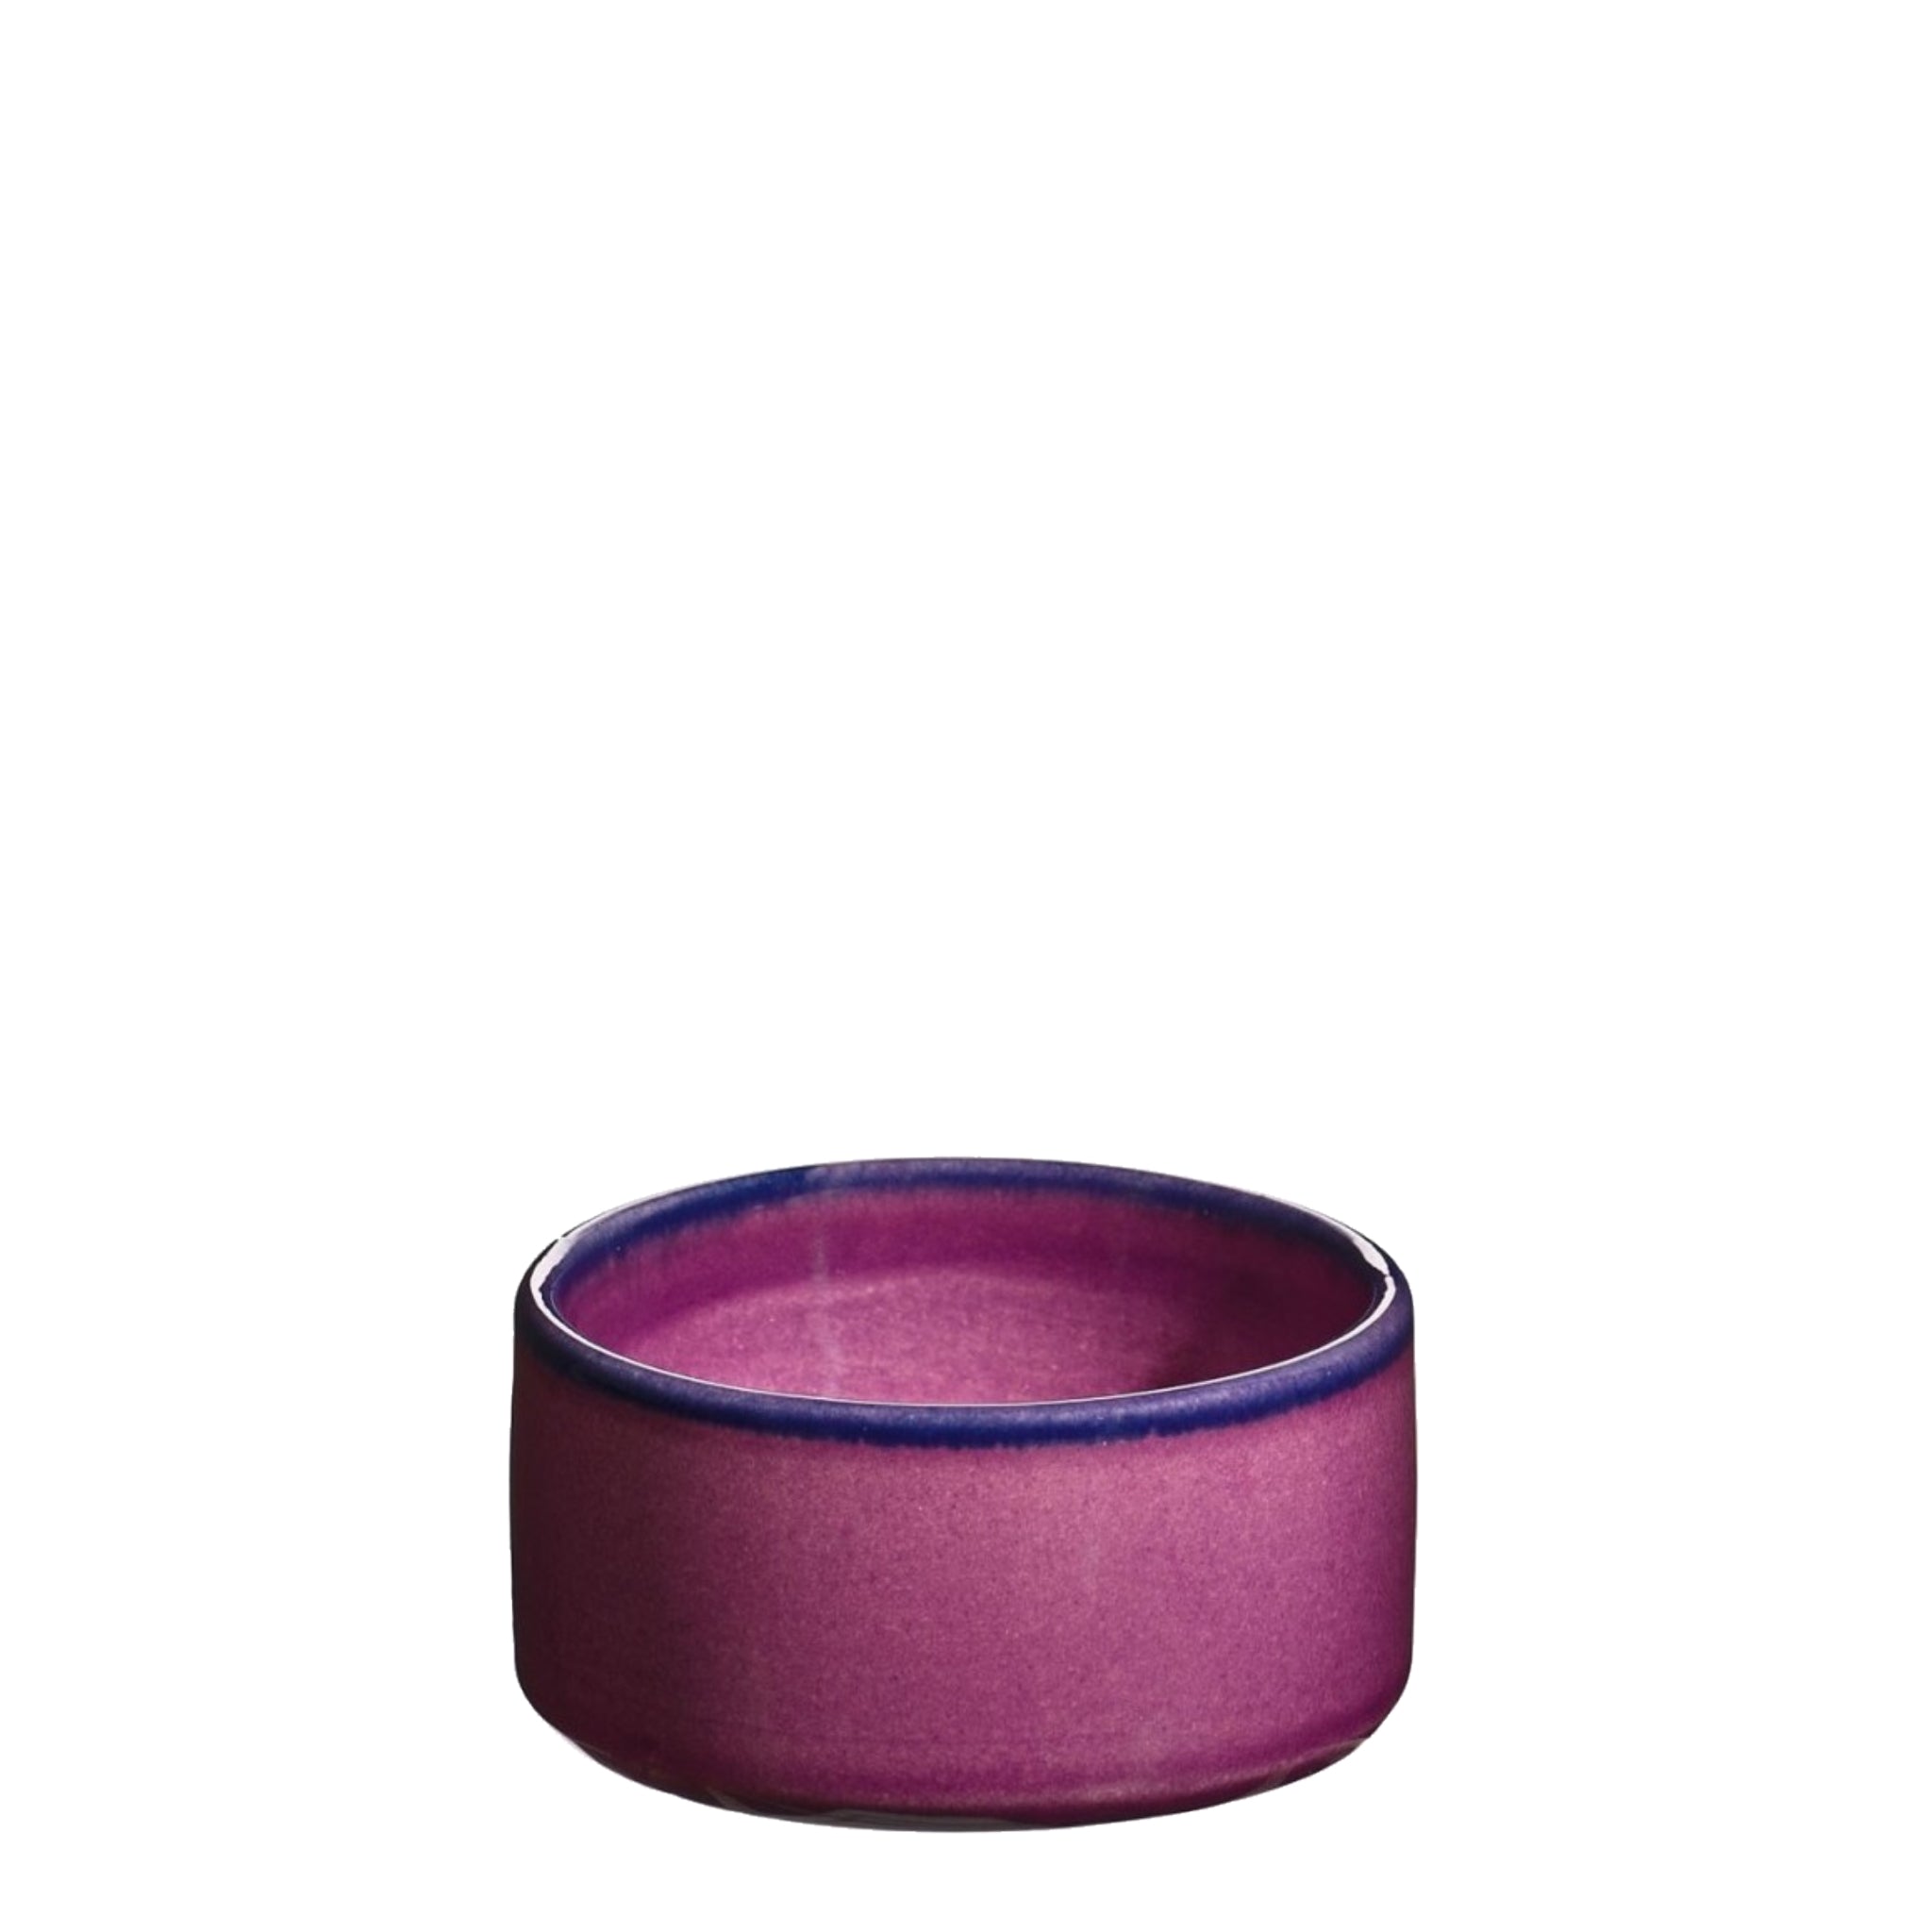 Ramekin, lille håndlavet keramik skål i farven hindbær fra Atelier Bernex, Oliviers & Co